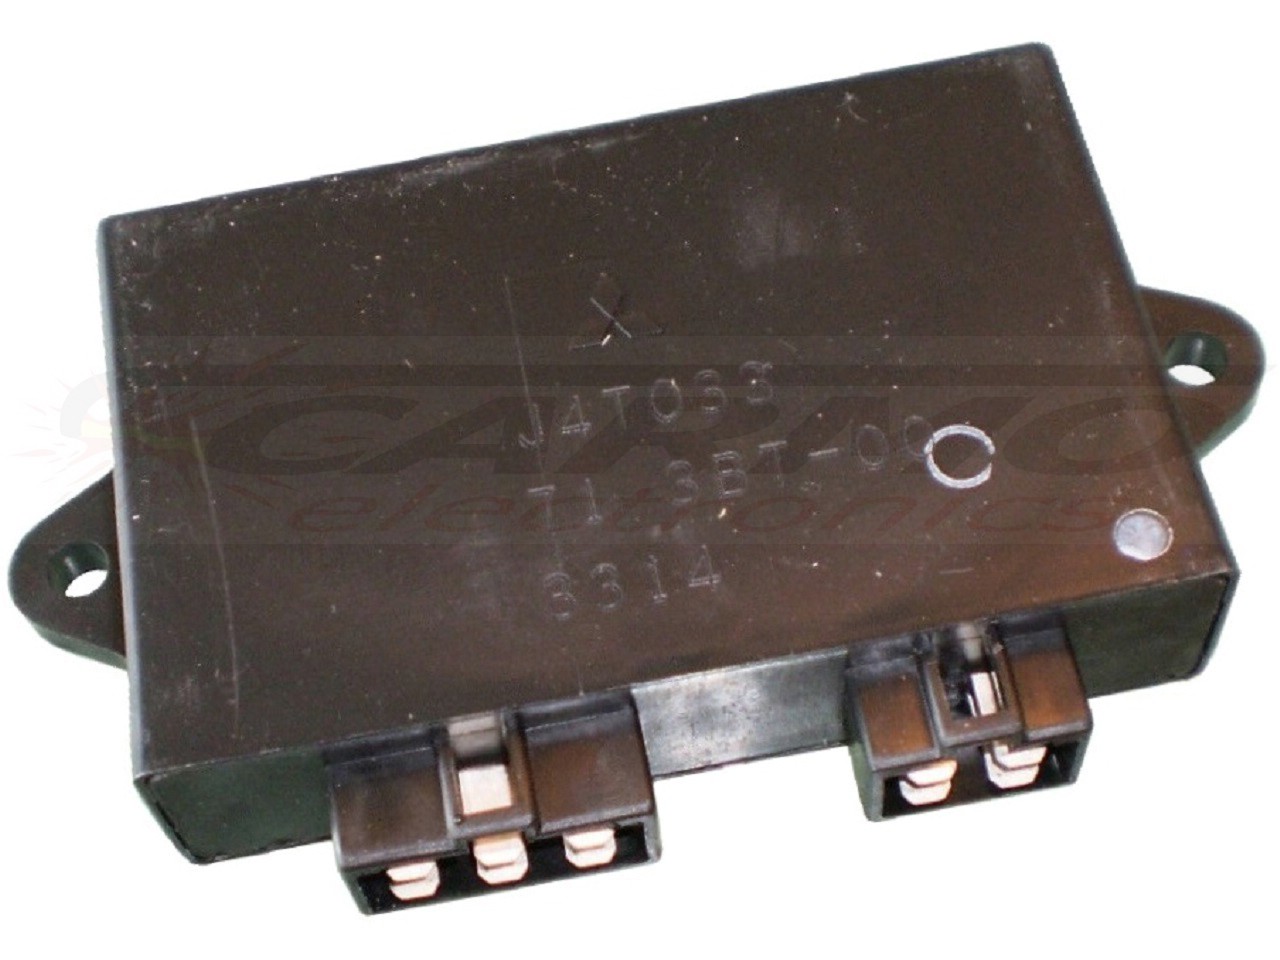 XV535 Virago TCI CDI dispositif de commande boîte noire (J4T033, 71 3BT-00, 3BT-82305-00-00)